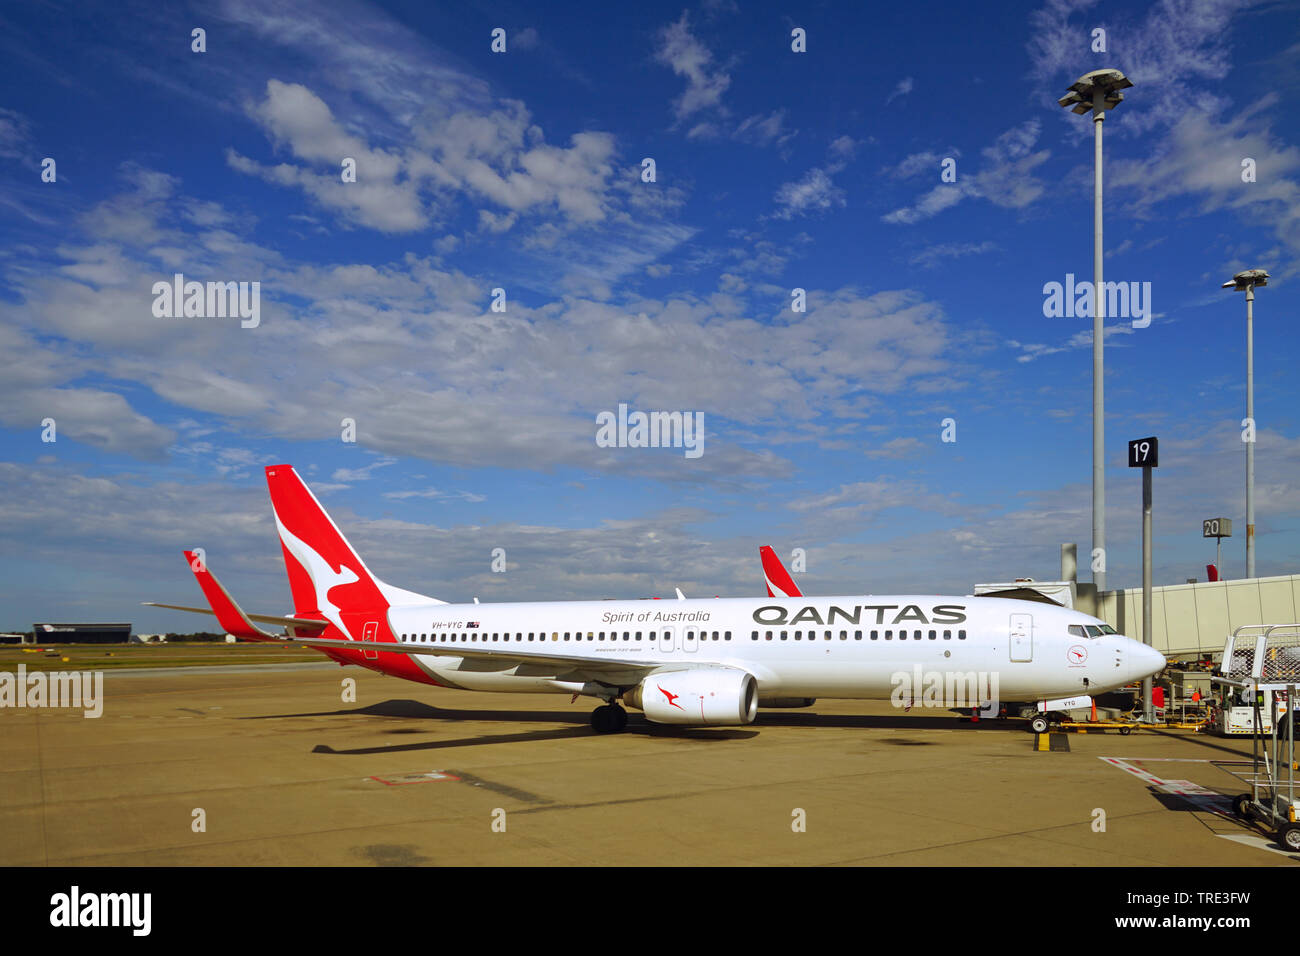 BRISBANE, Australien - 20 May 2018 - Ansicht von Flugzeugen von der australischen Fluggesellschaft Qantas (QF) am Flughafen Brisbane (BNE) in Queensland, Australien. Stockfoto